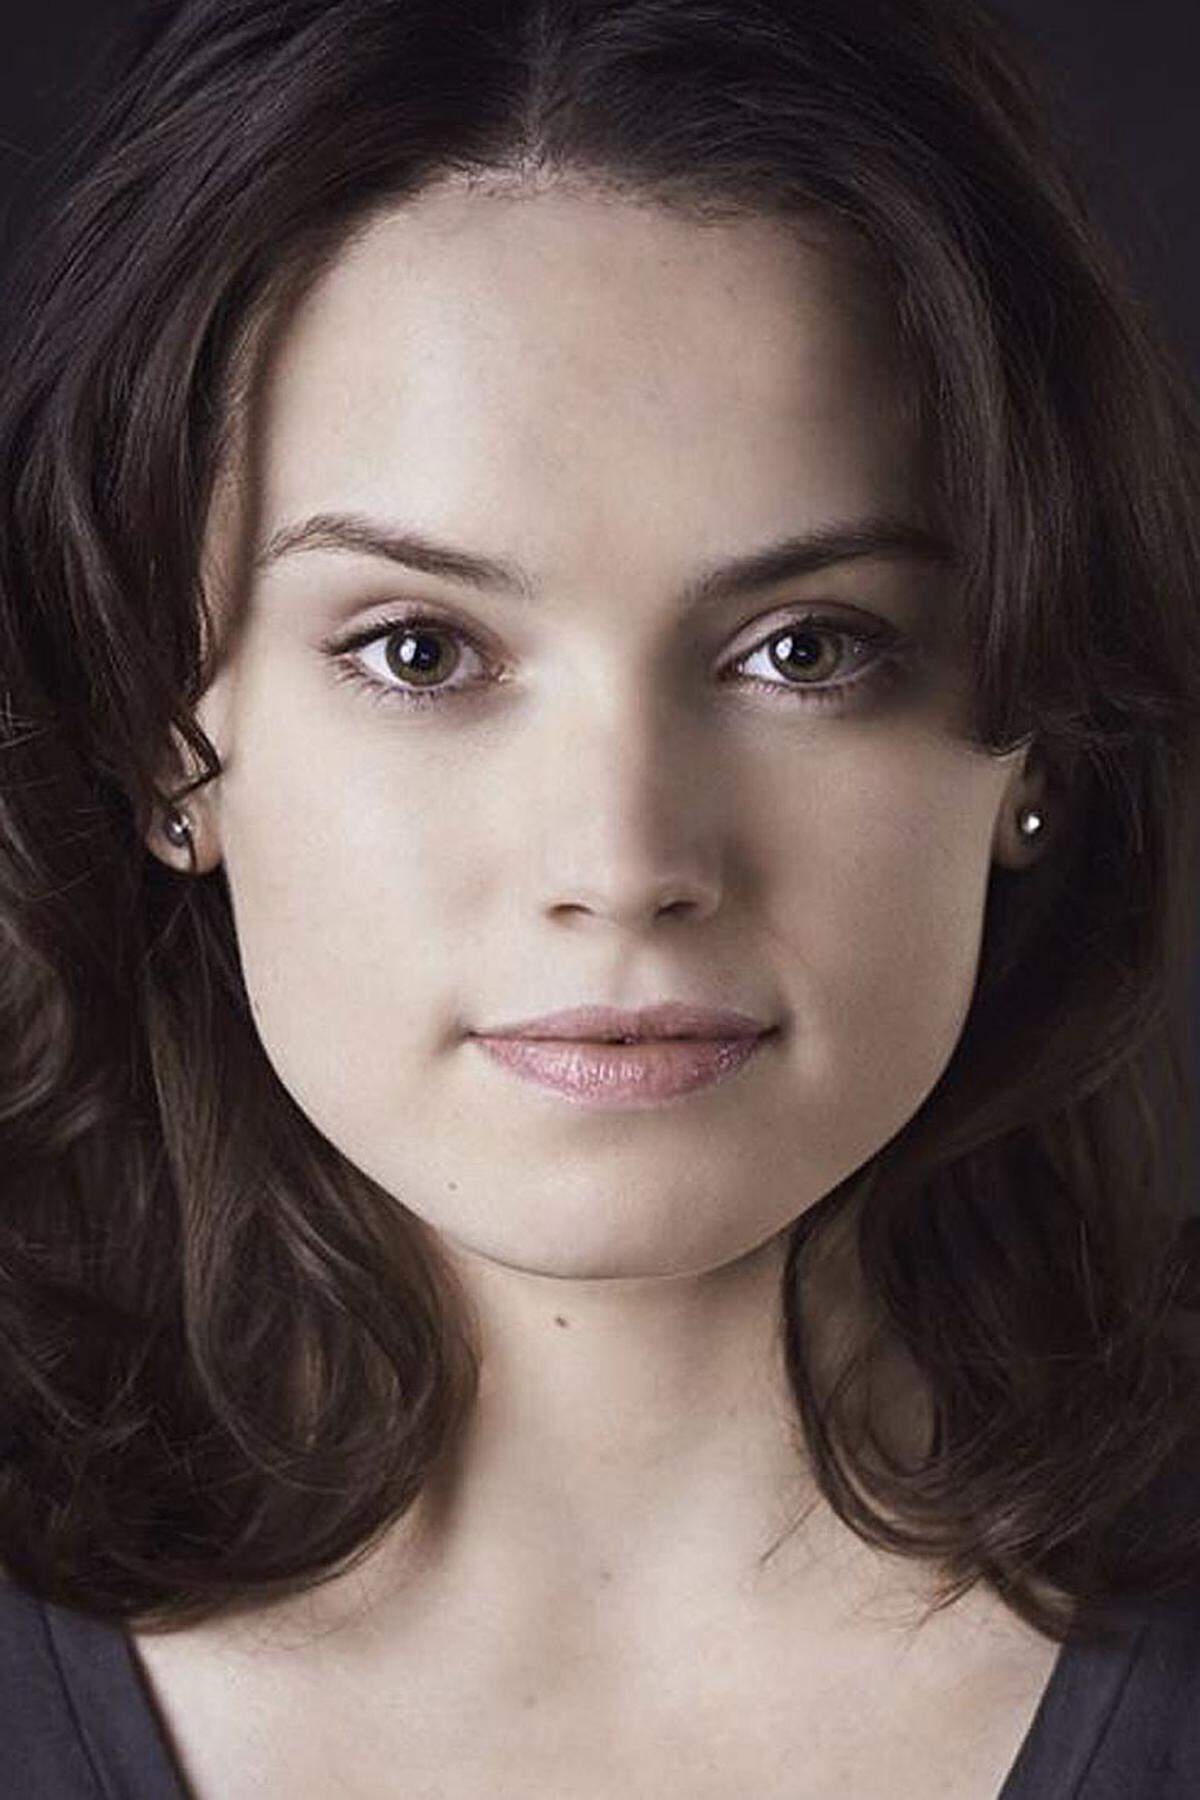 Die junge britische Schauspielerin Daisy Ridley wirkte in BBC-Fernsehproduktionen wie "Silent Witness" mit. Sie verkörpert Rey, ebenfalls eine zentrale Figur im neuen Star Wars-Film.